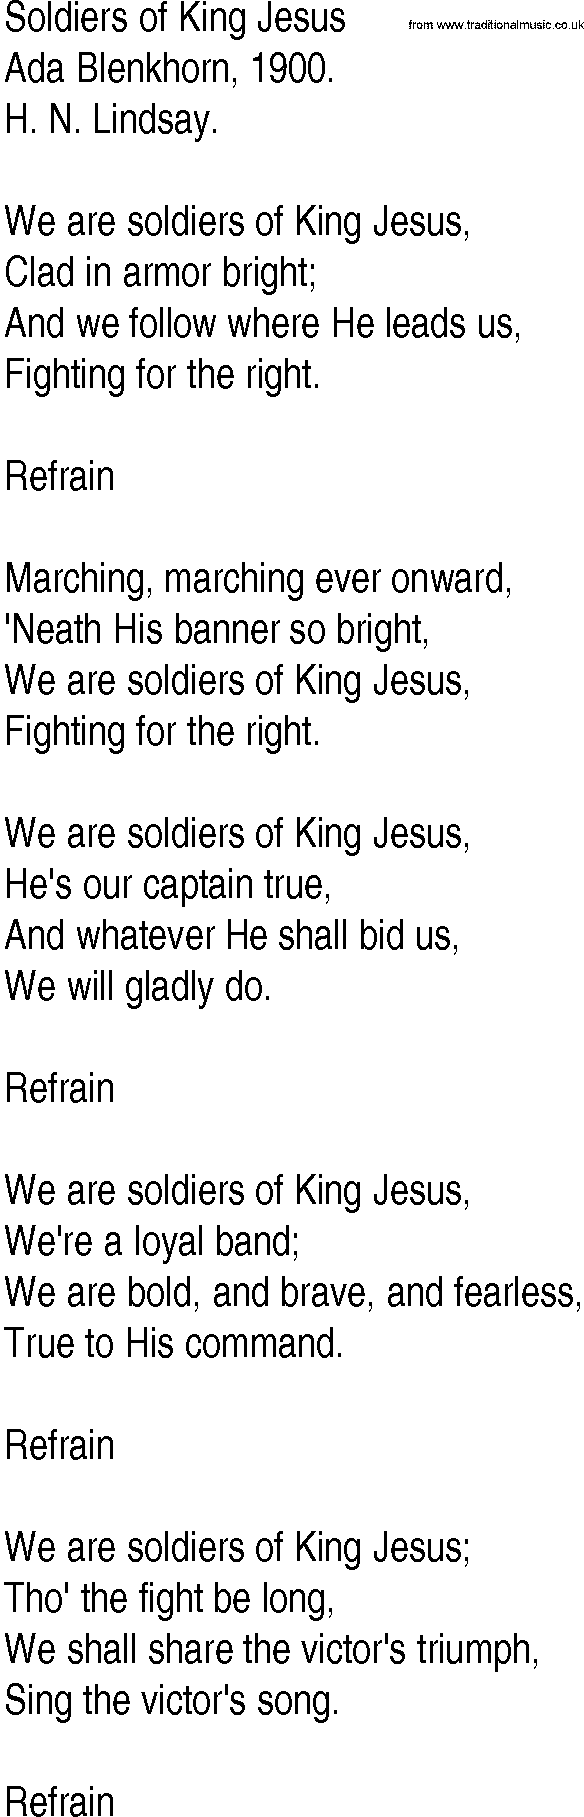 Hymn and Gospel Song: Soldiers of King Jesus by Ada Blenkhorn lyrics